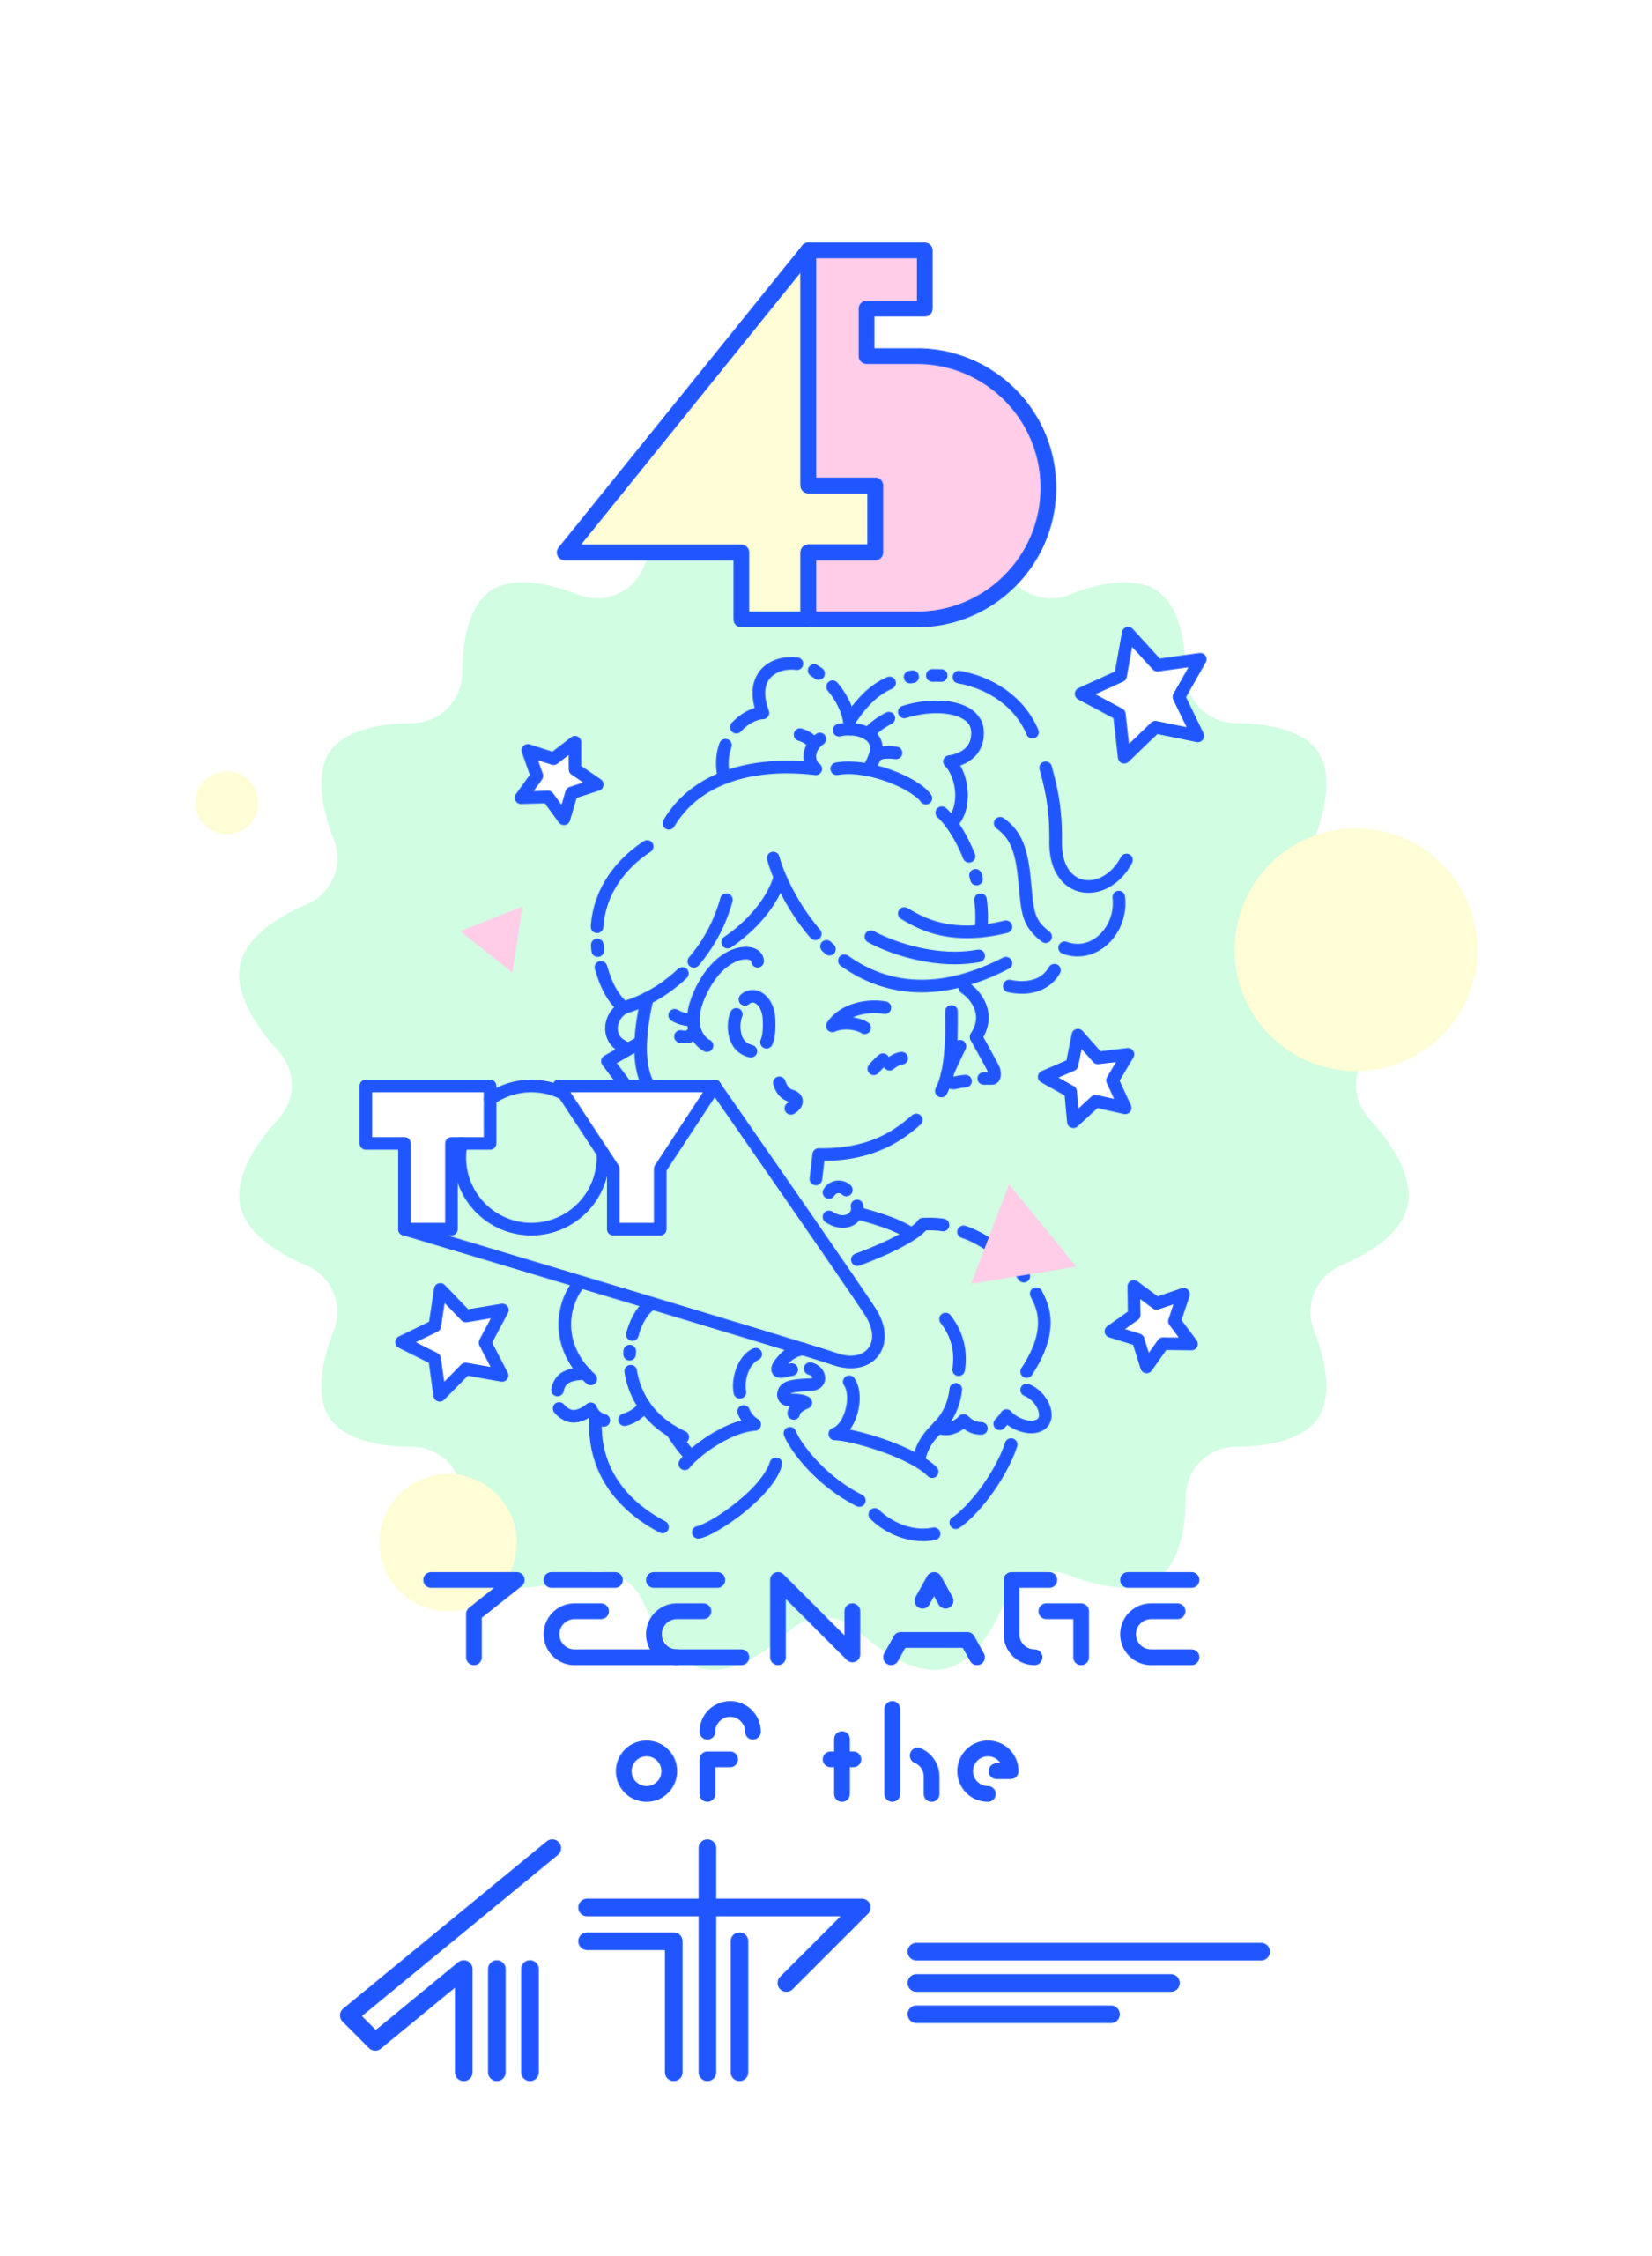 12/4 土 吉祥寺 ichibee -Teenage of the Year-